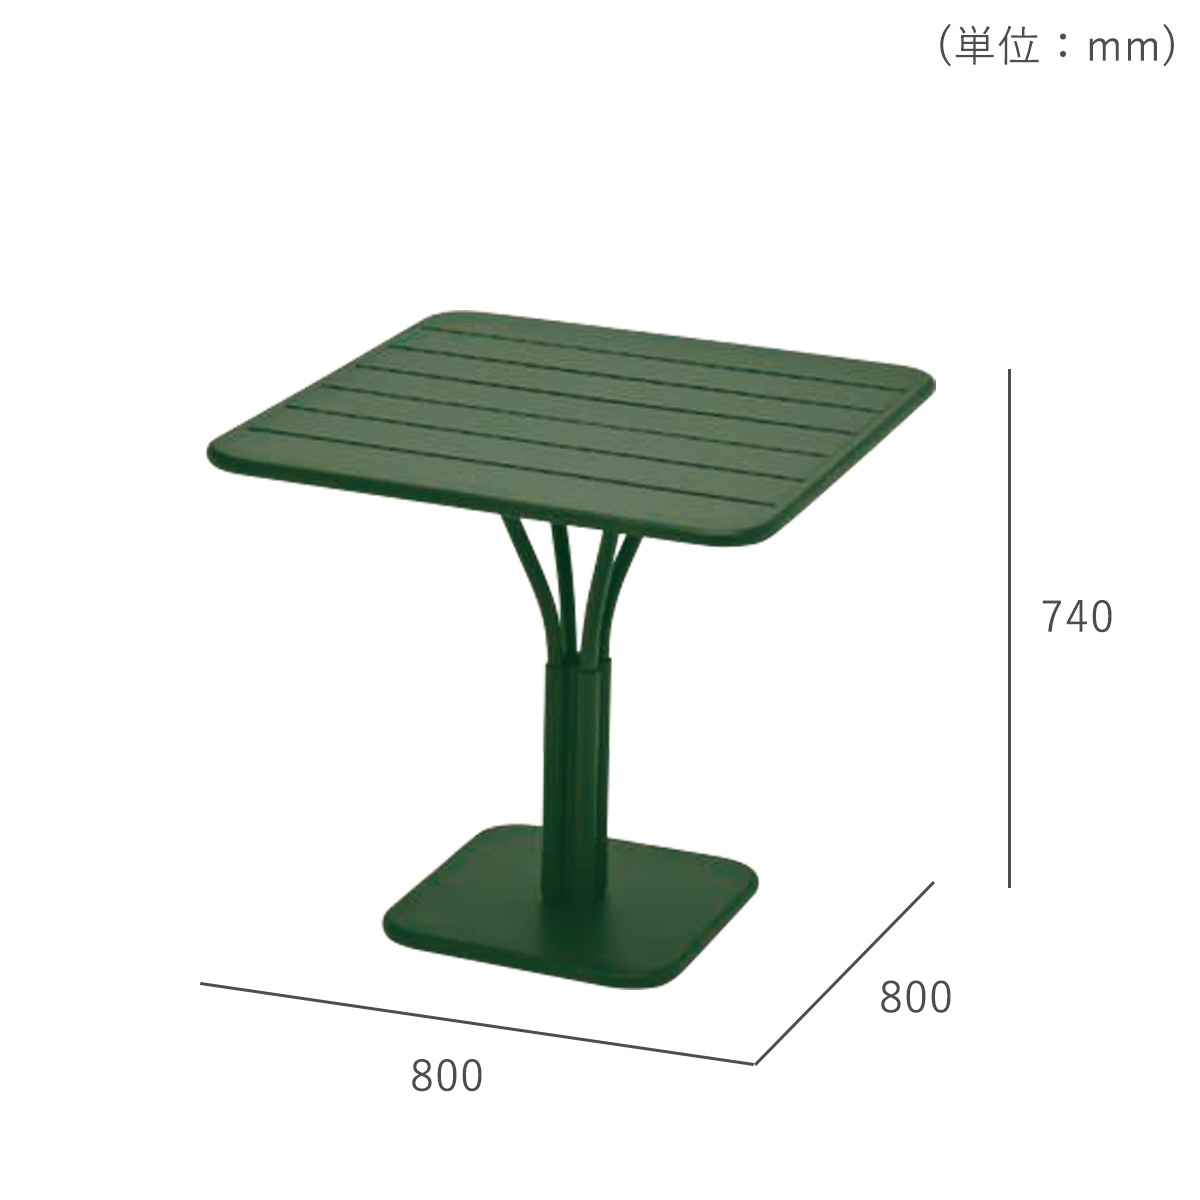 ガーデンテーブル「Fermob フェルモブ ルクセンブールテーブル80×80」